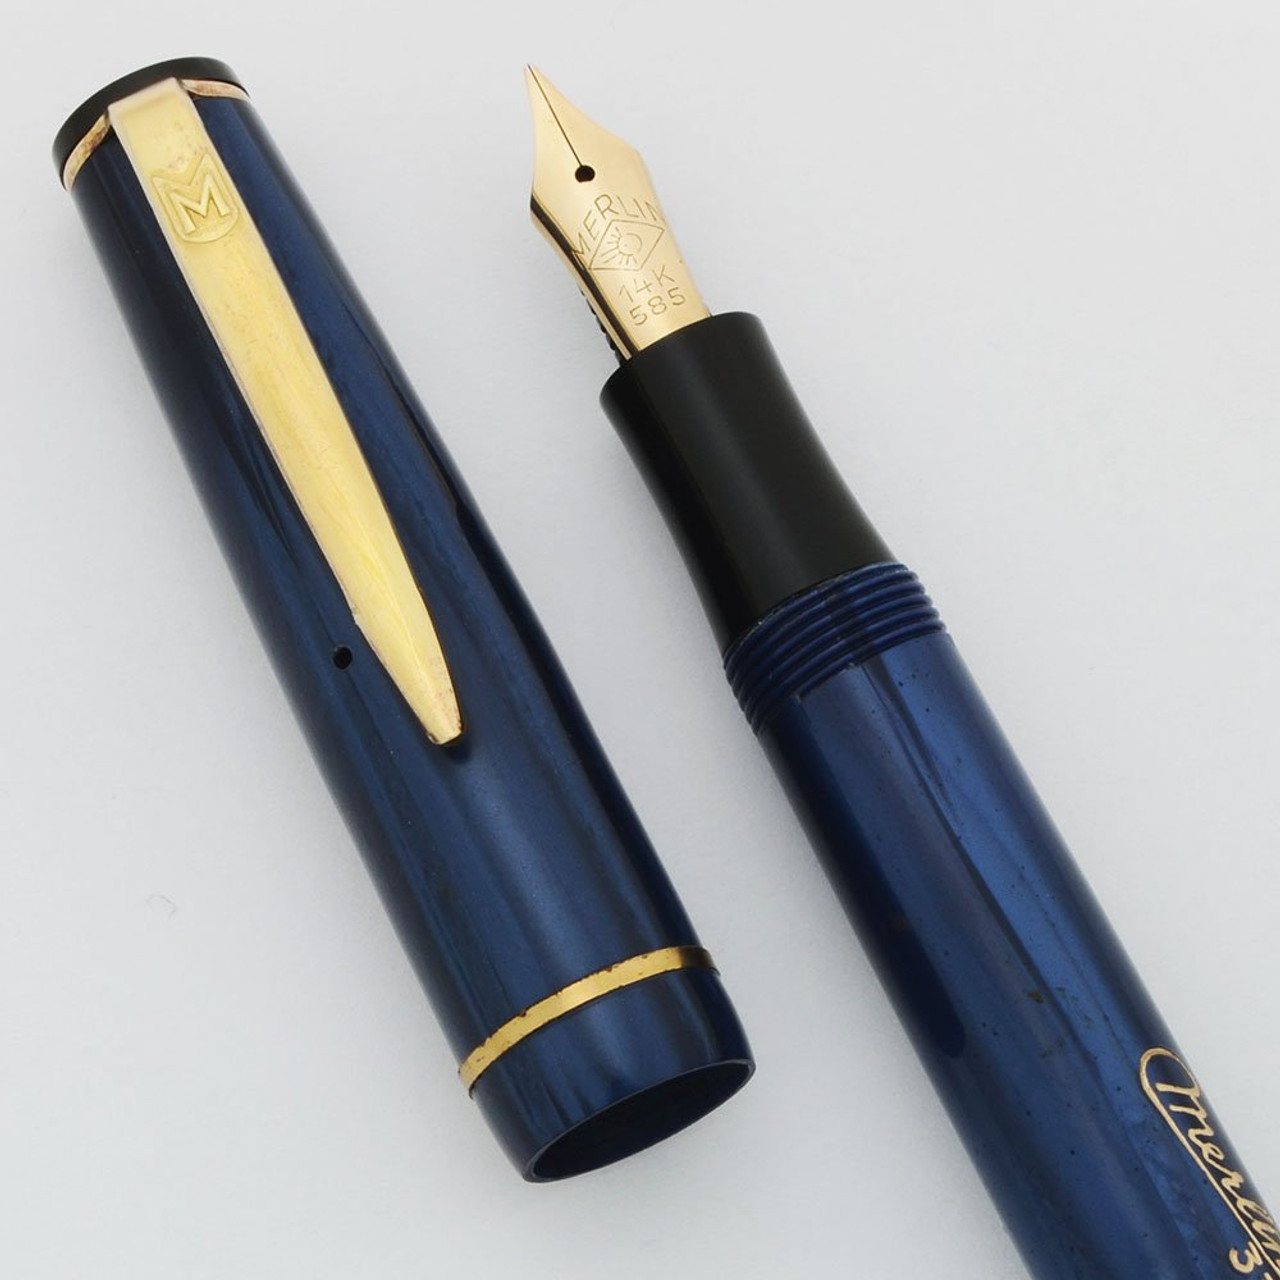 Merlin 33 Fountain Pen (Denmark) - Blue Marble, Button Filler, 14k Flexible Fine (New Old Stock, Restored)